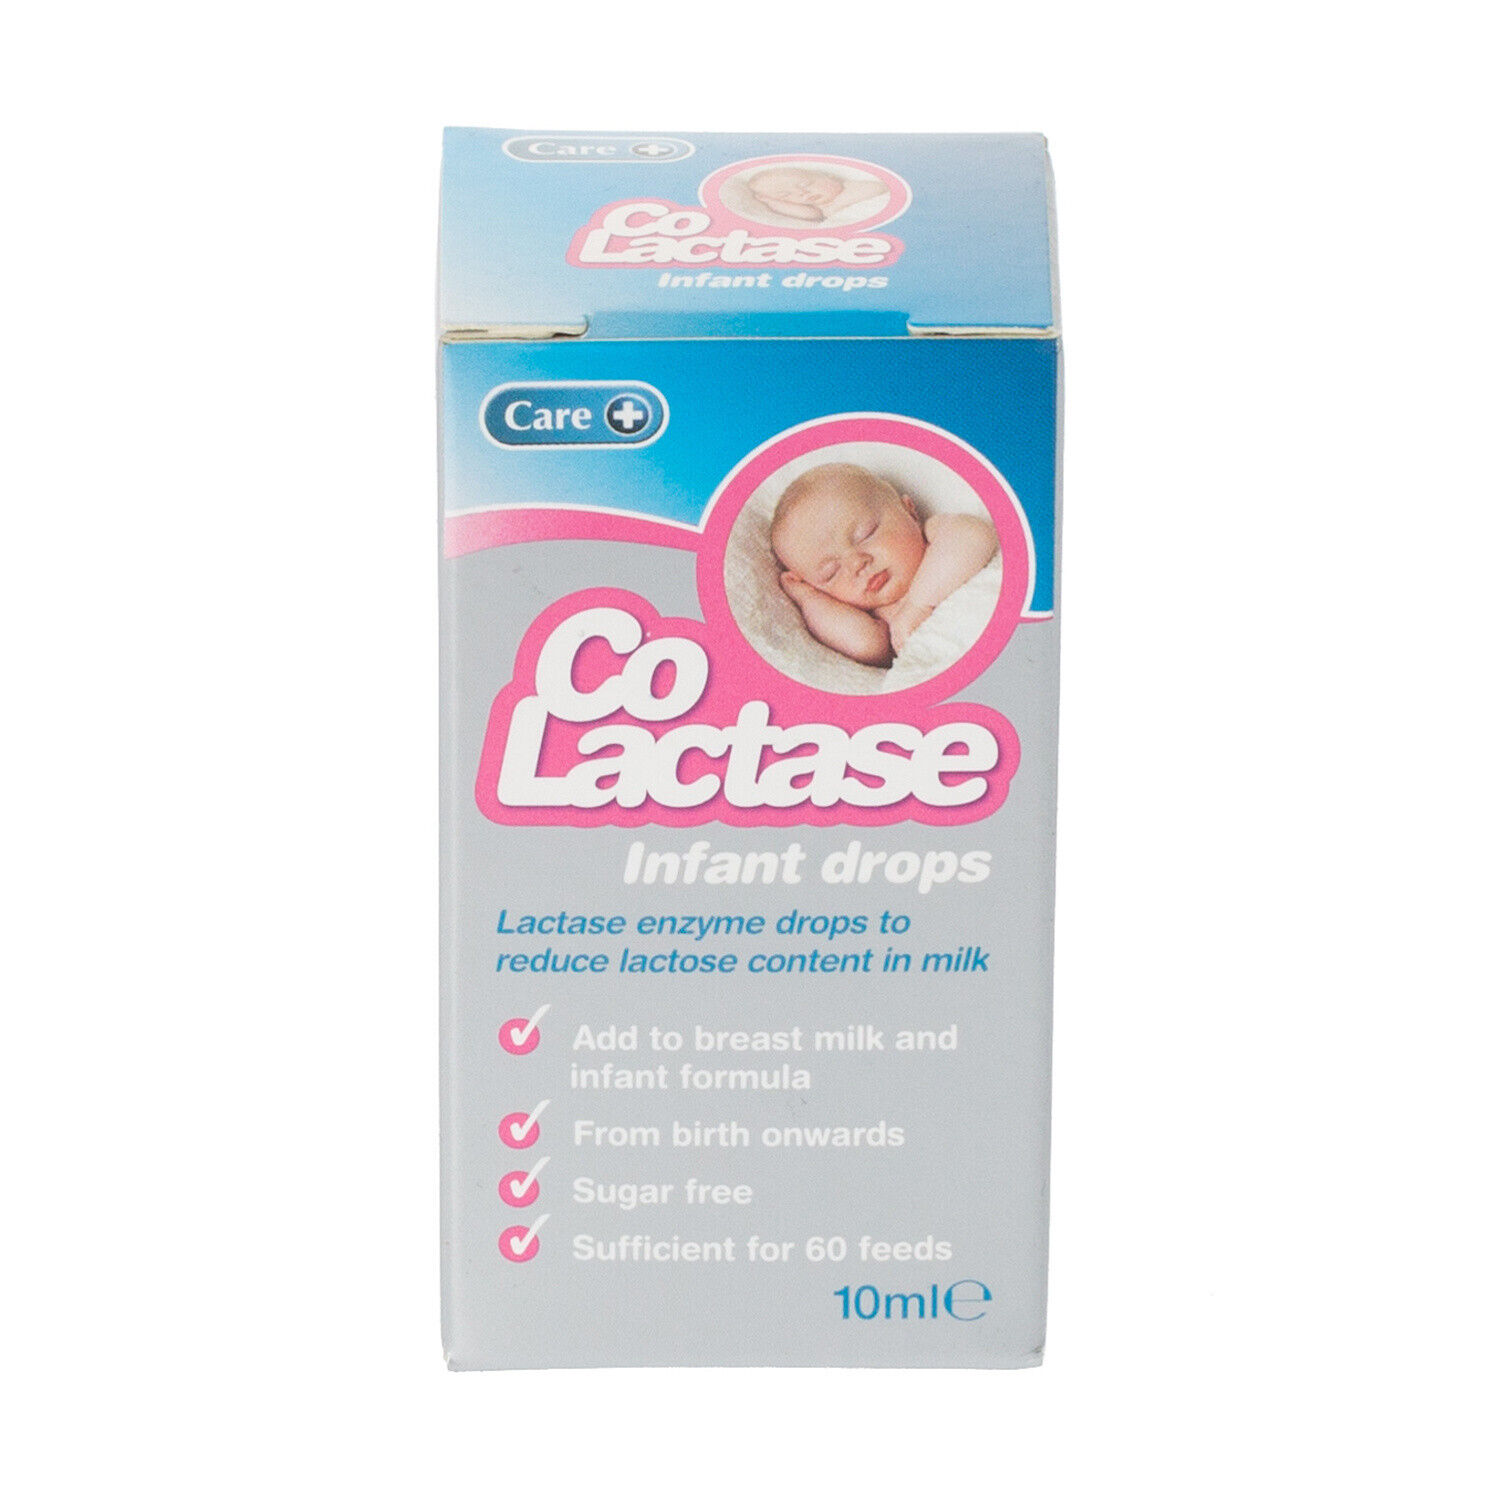 Care Plus Go Lactase Infant Drops 10ml RRP 10.99 CLEARANCE XL 8.99